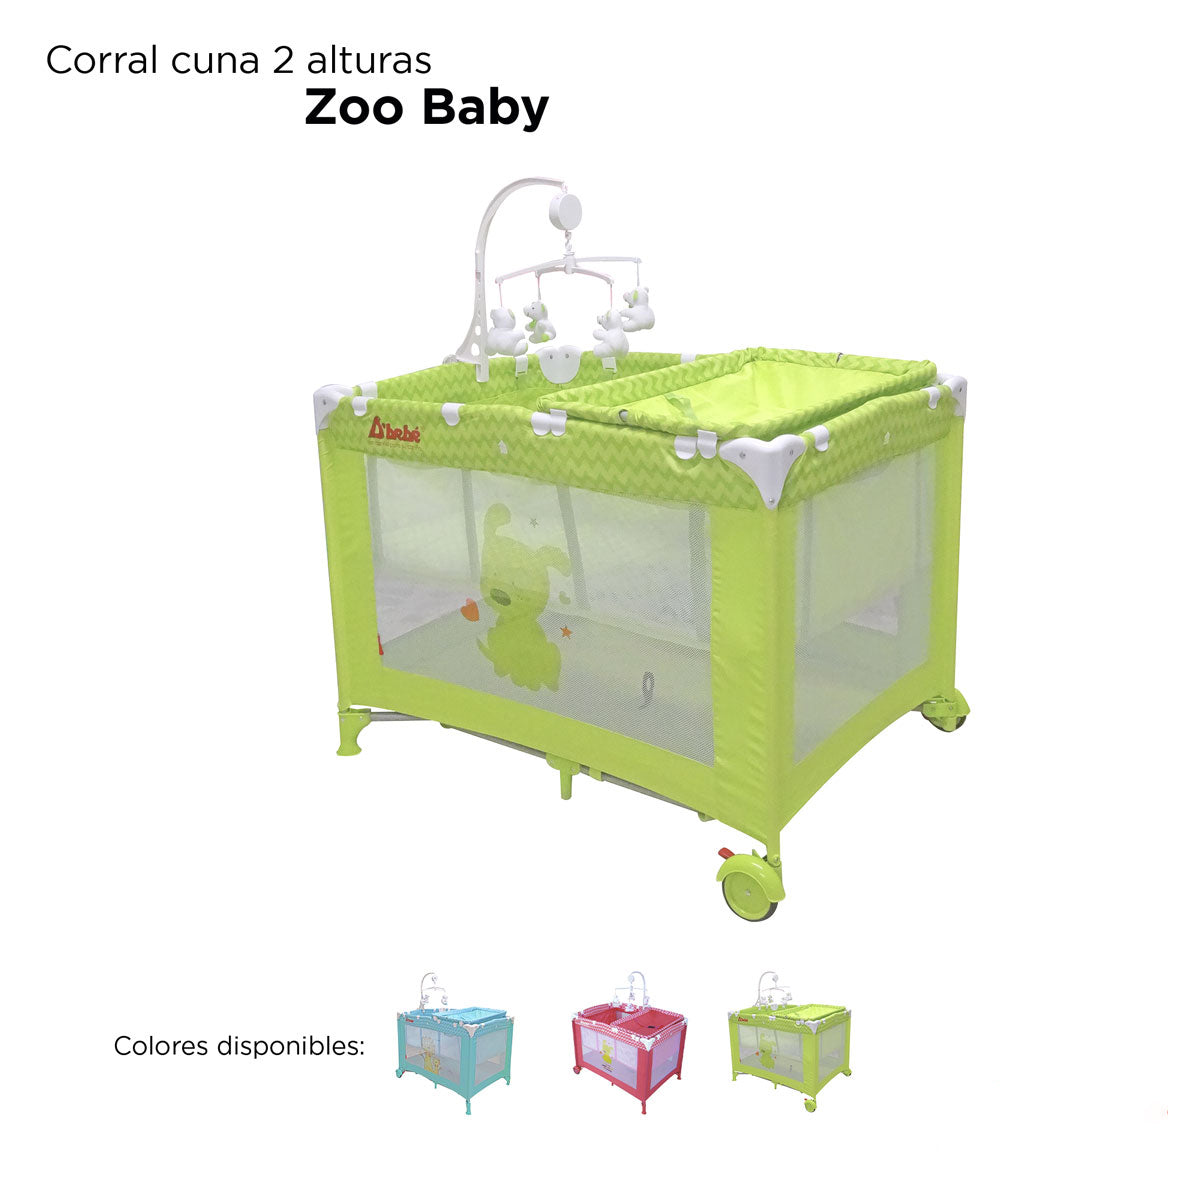 Corral Cuna D'bebé Cuna Zoo Unisex de 0 a 36 meses